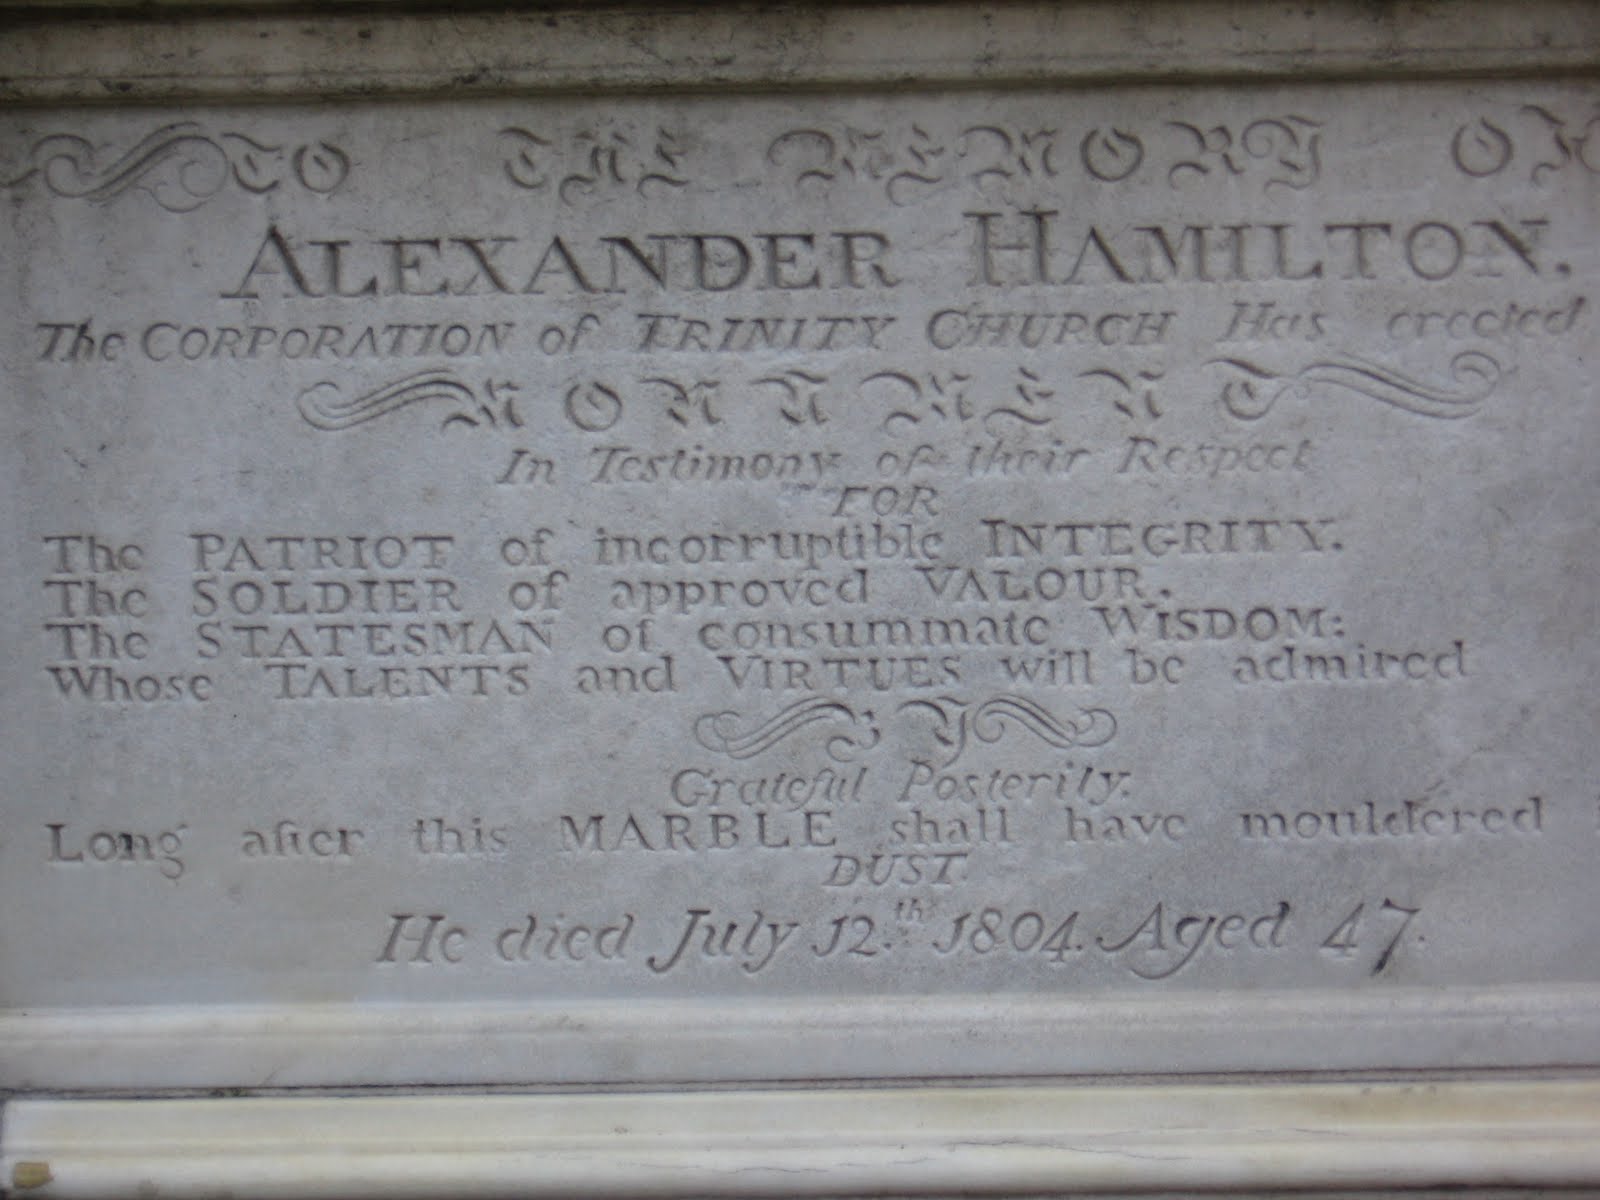 Alexander hamilton vs thomas jefferson essay